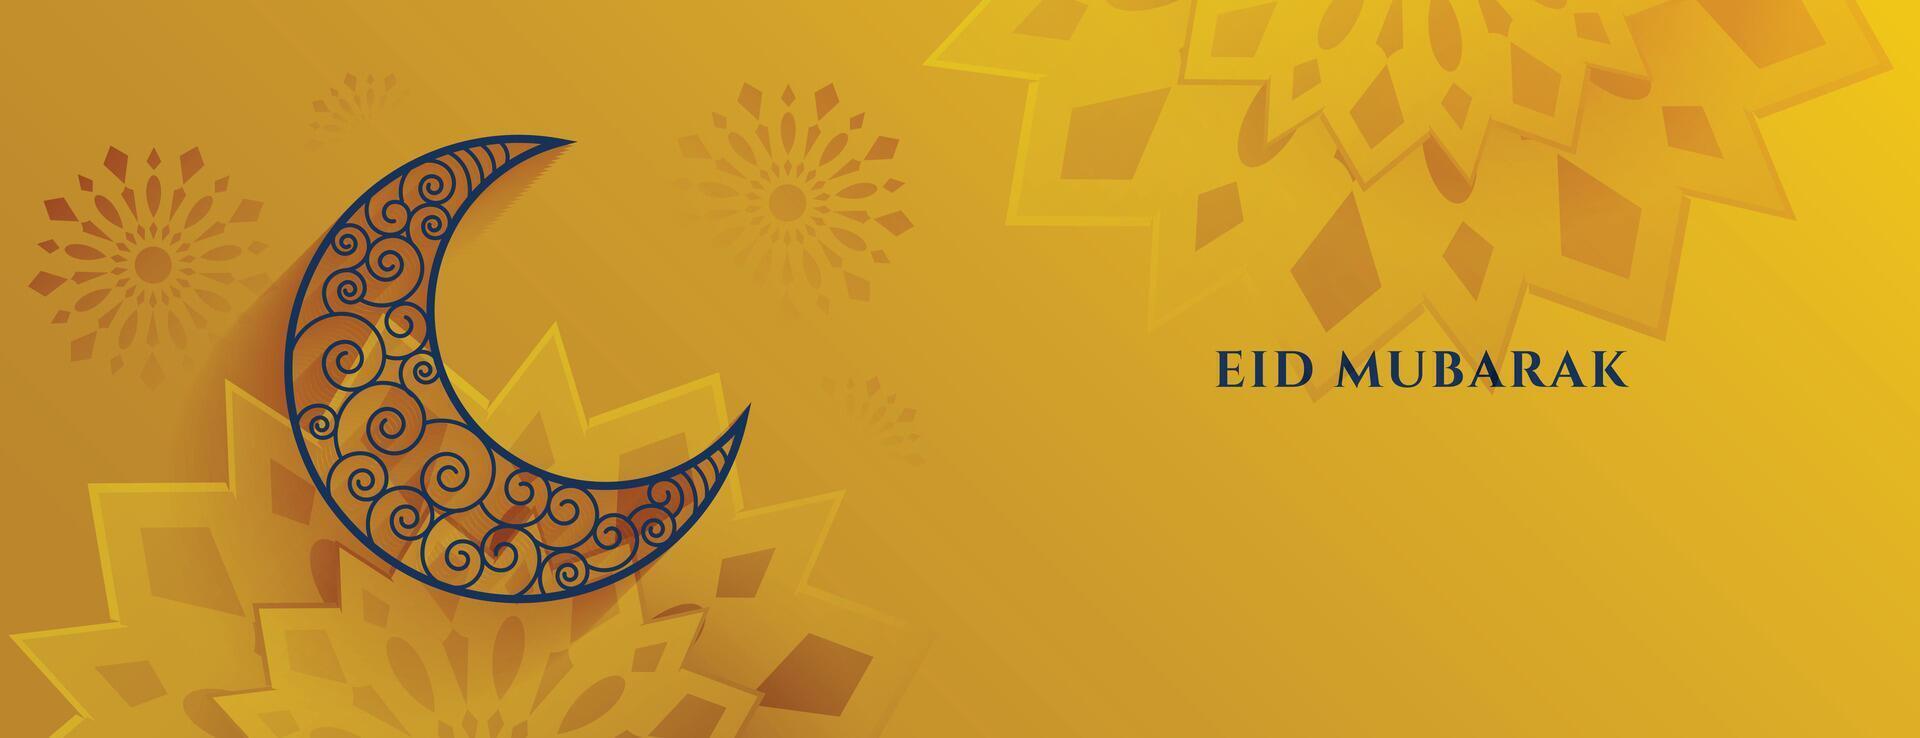 islamic stil eid mubarak festival dekorativ baner design vektor